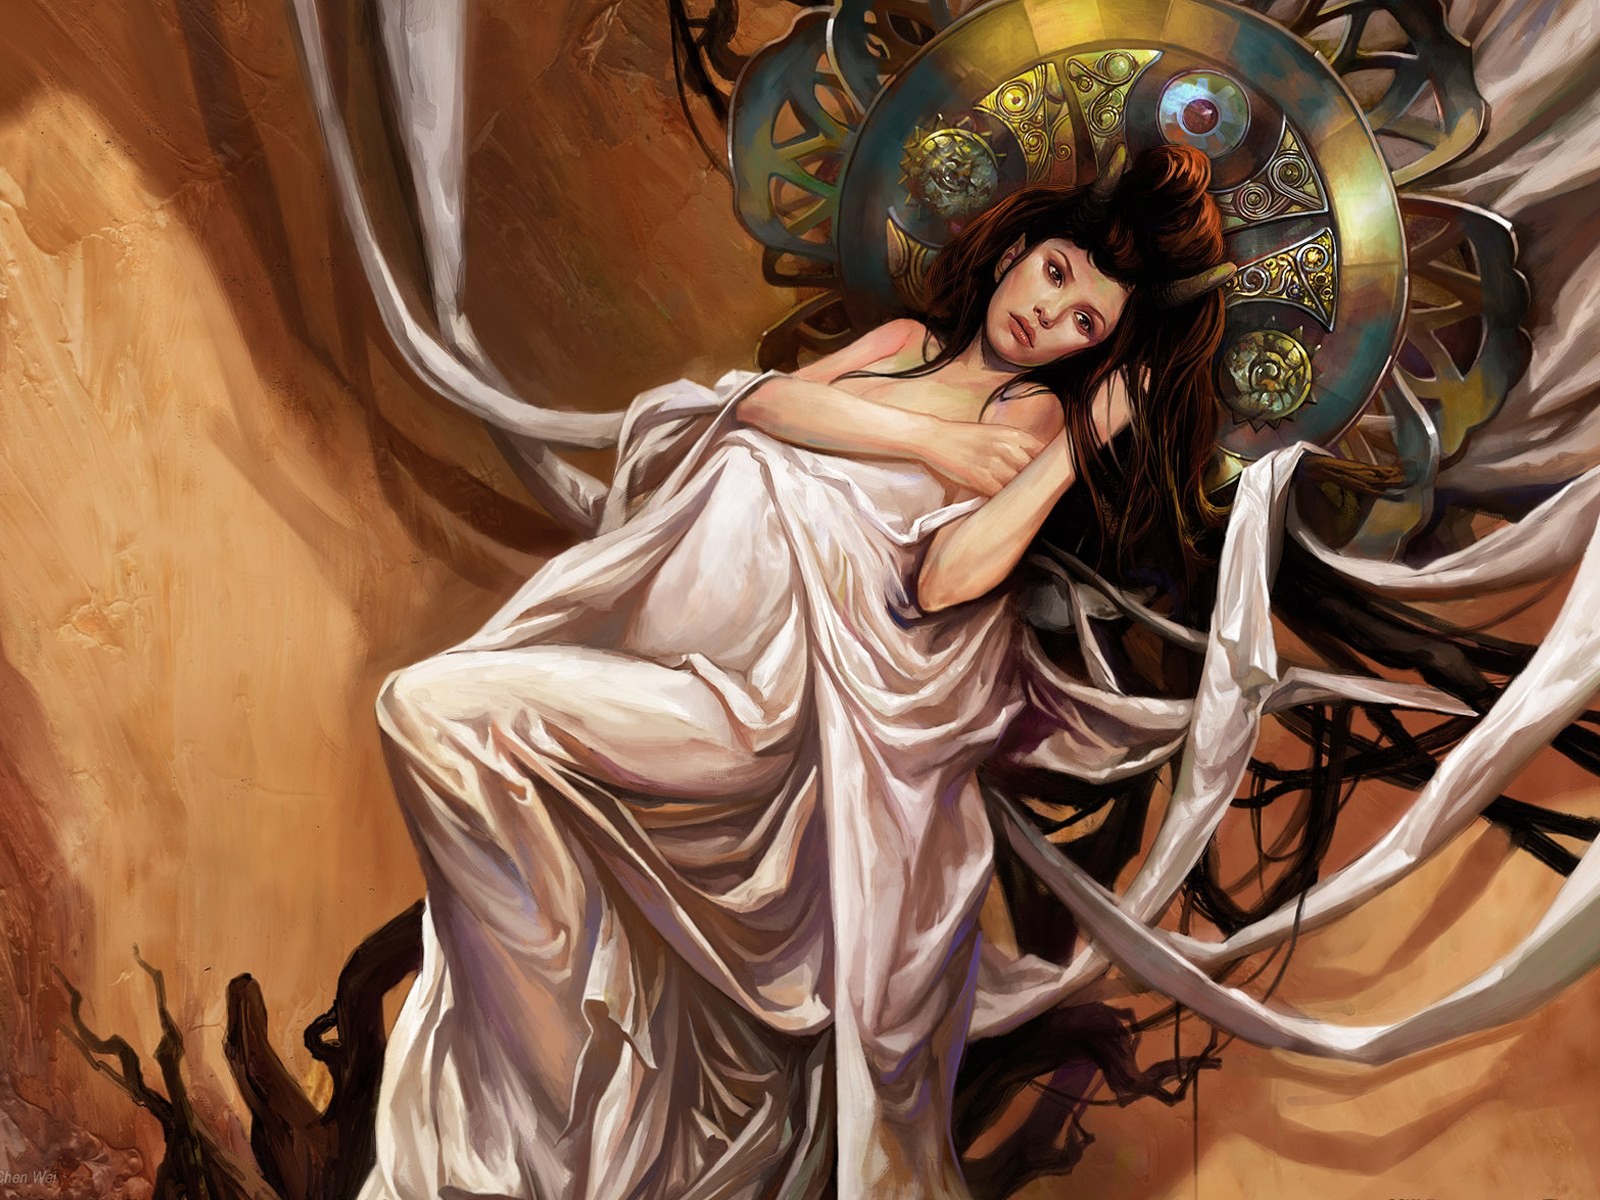 CG illustration wallpaper fantasy women #14 - 1600x1200